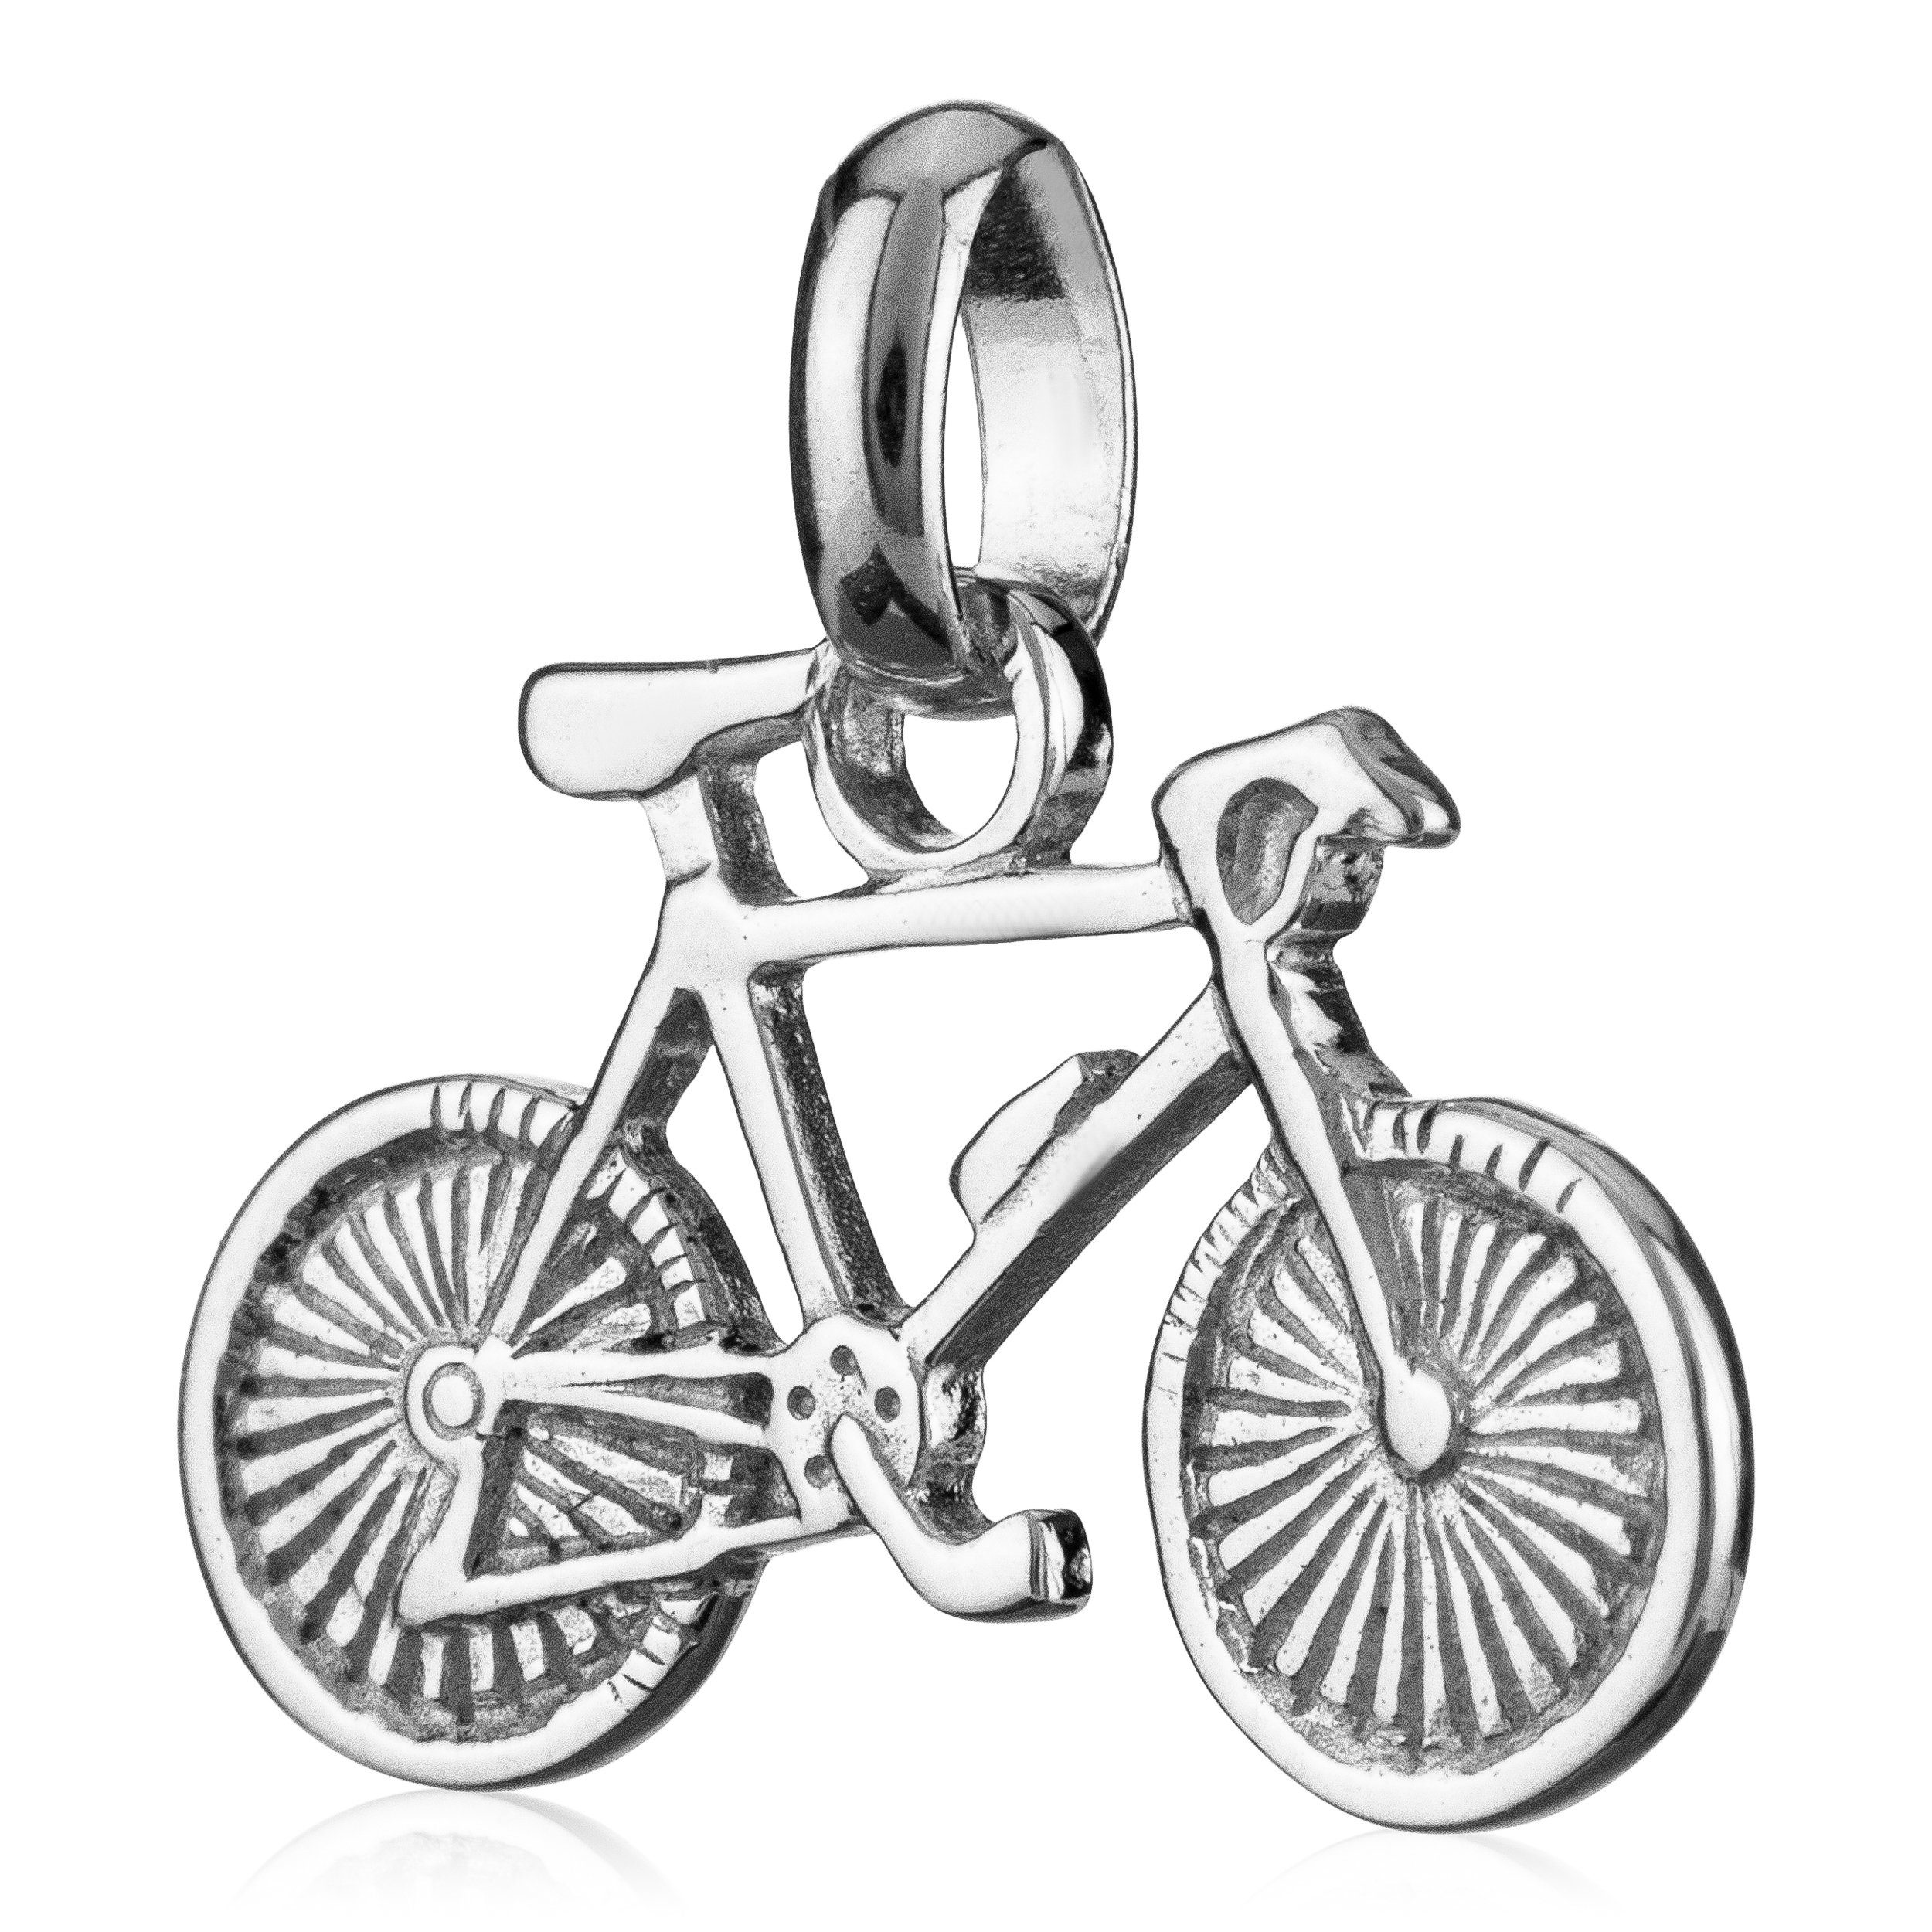 NKlaus Kettenanhänger Fahrrad klein Kettenanhänger Bike 9x17mm 92 Silber